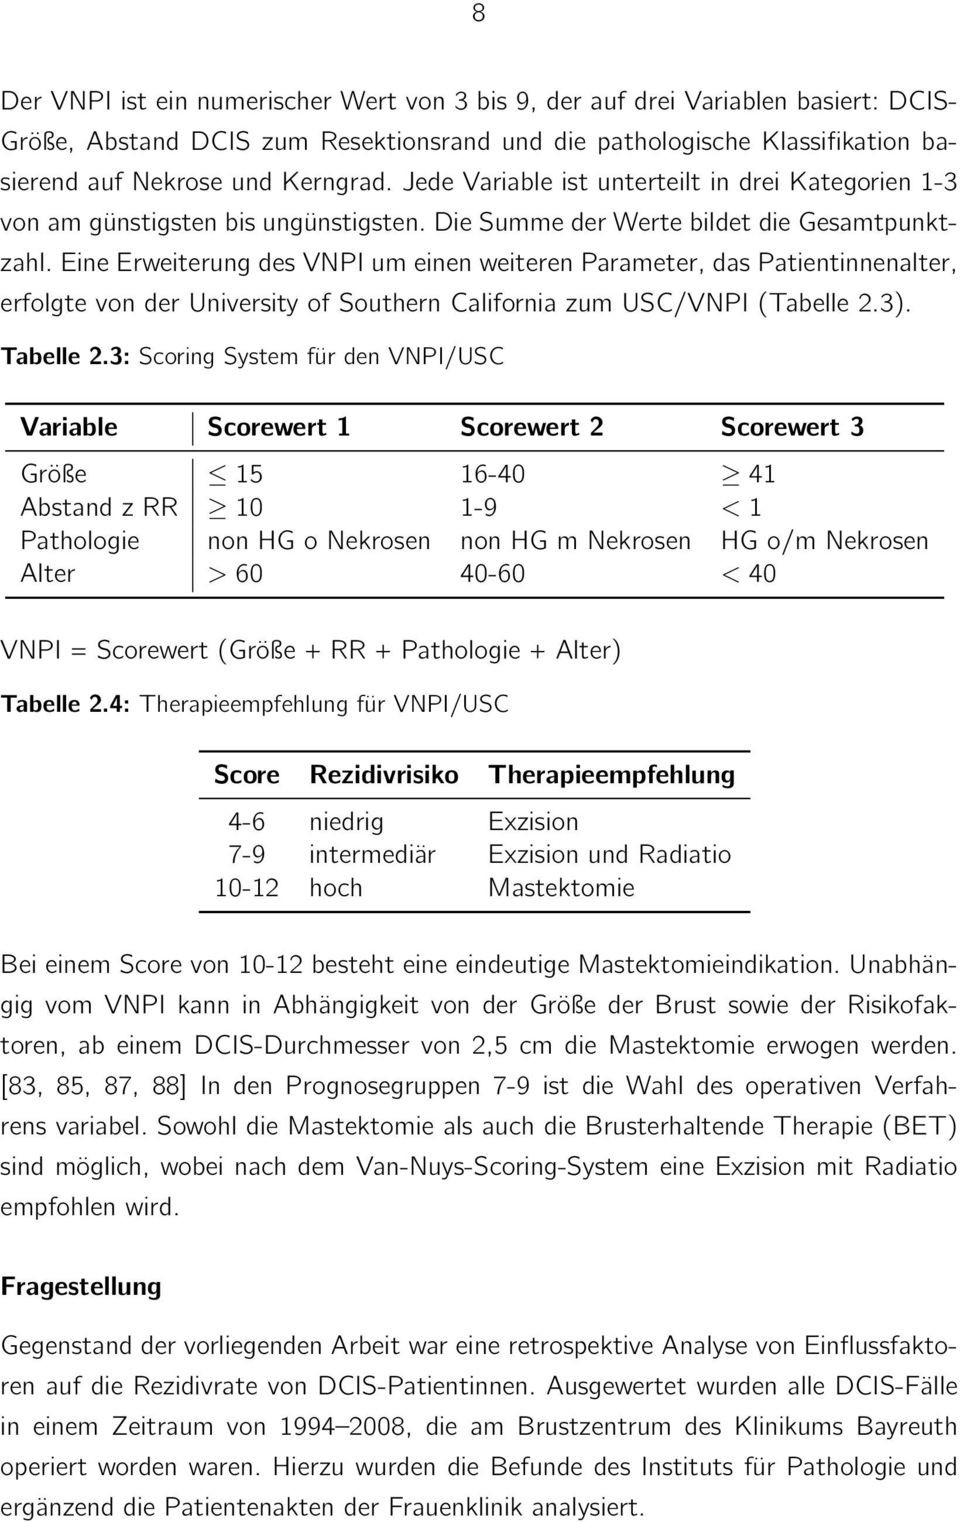 Eine Erweiterung des VNPI um einen weiteren Parameter, das Patientinnenalter, erfolgte von der University of Southern California zum USC/VNPI (Tabelle 2.3). Tabelle 2.